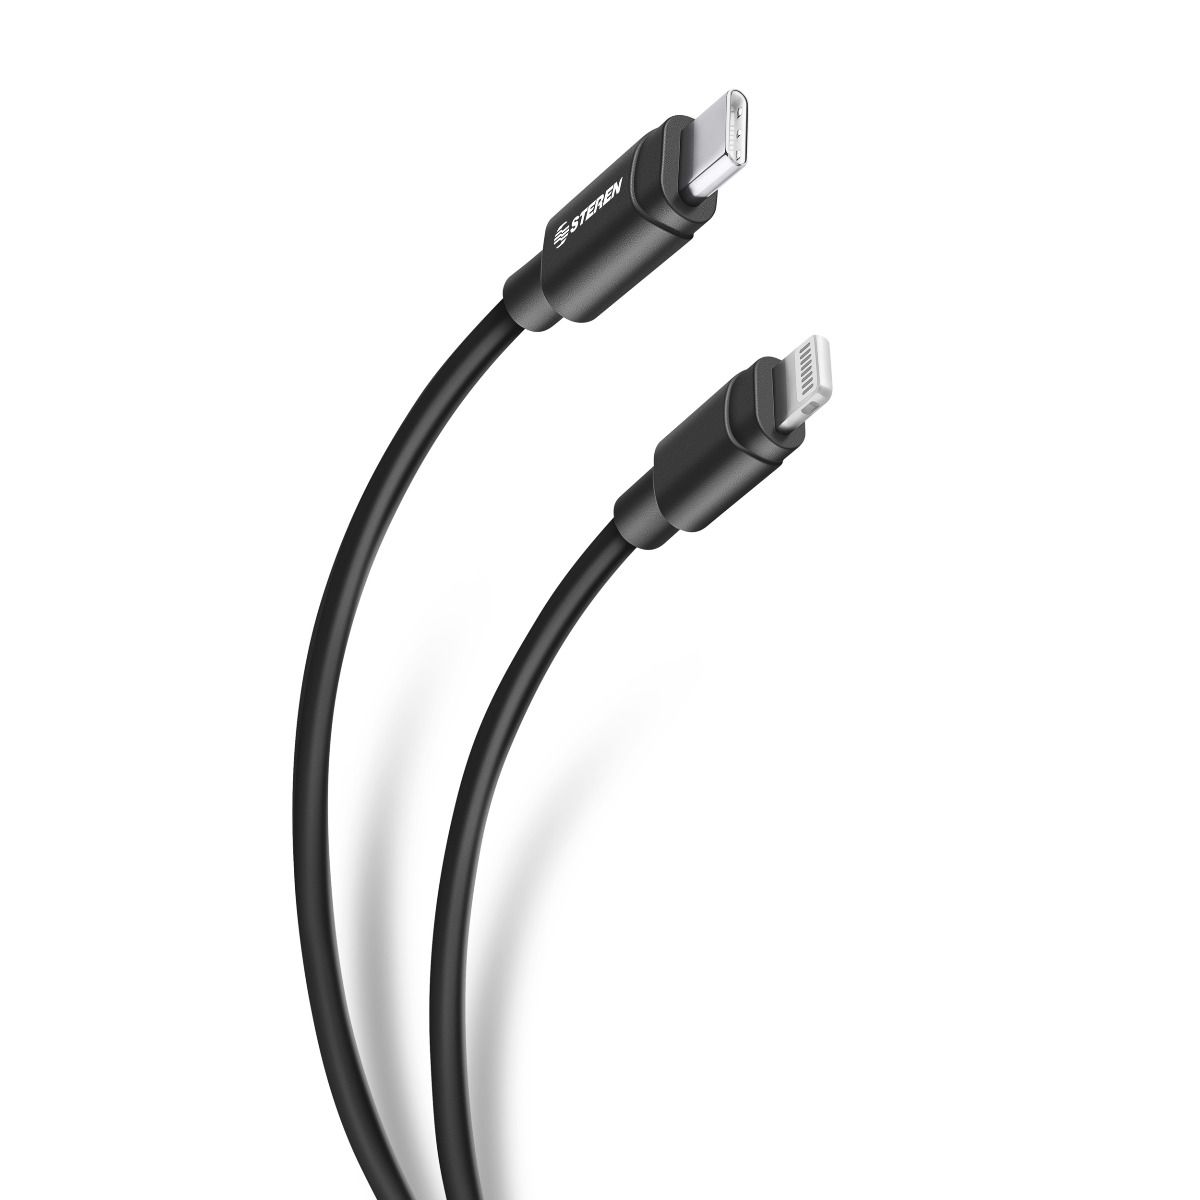 Adaptador Lightning a USB Ipad - Cables USB - Los mejores precios